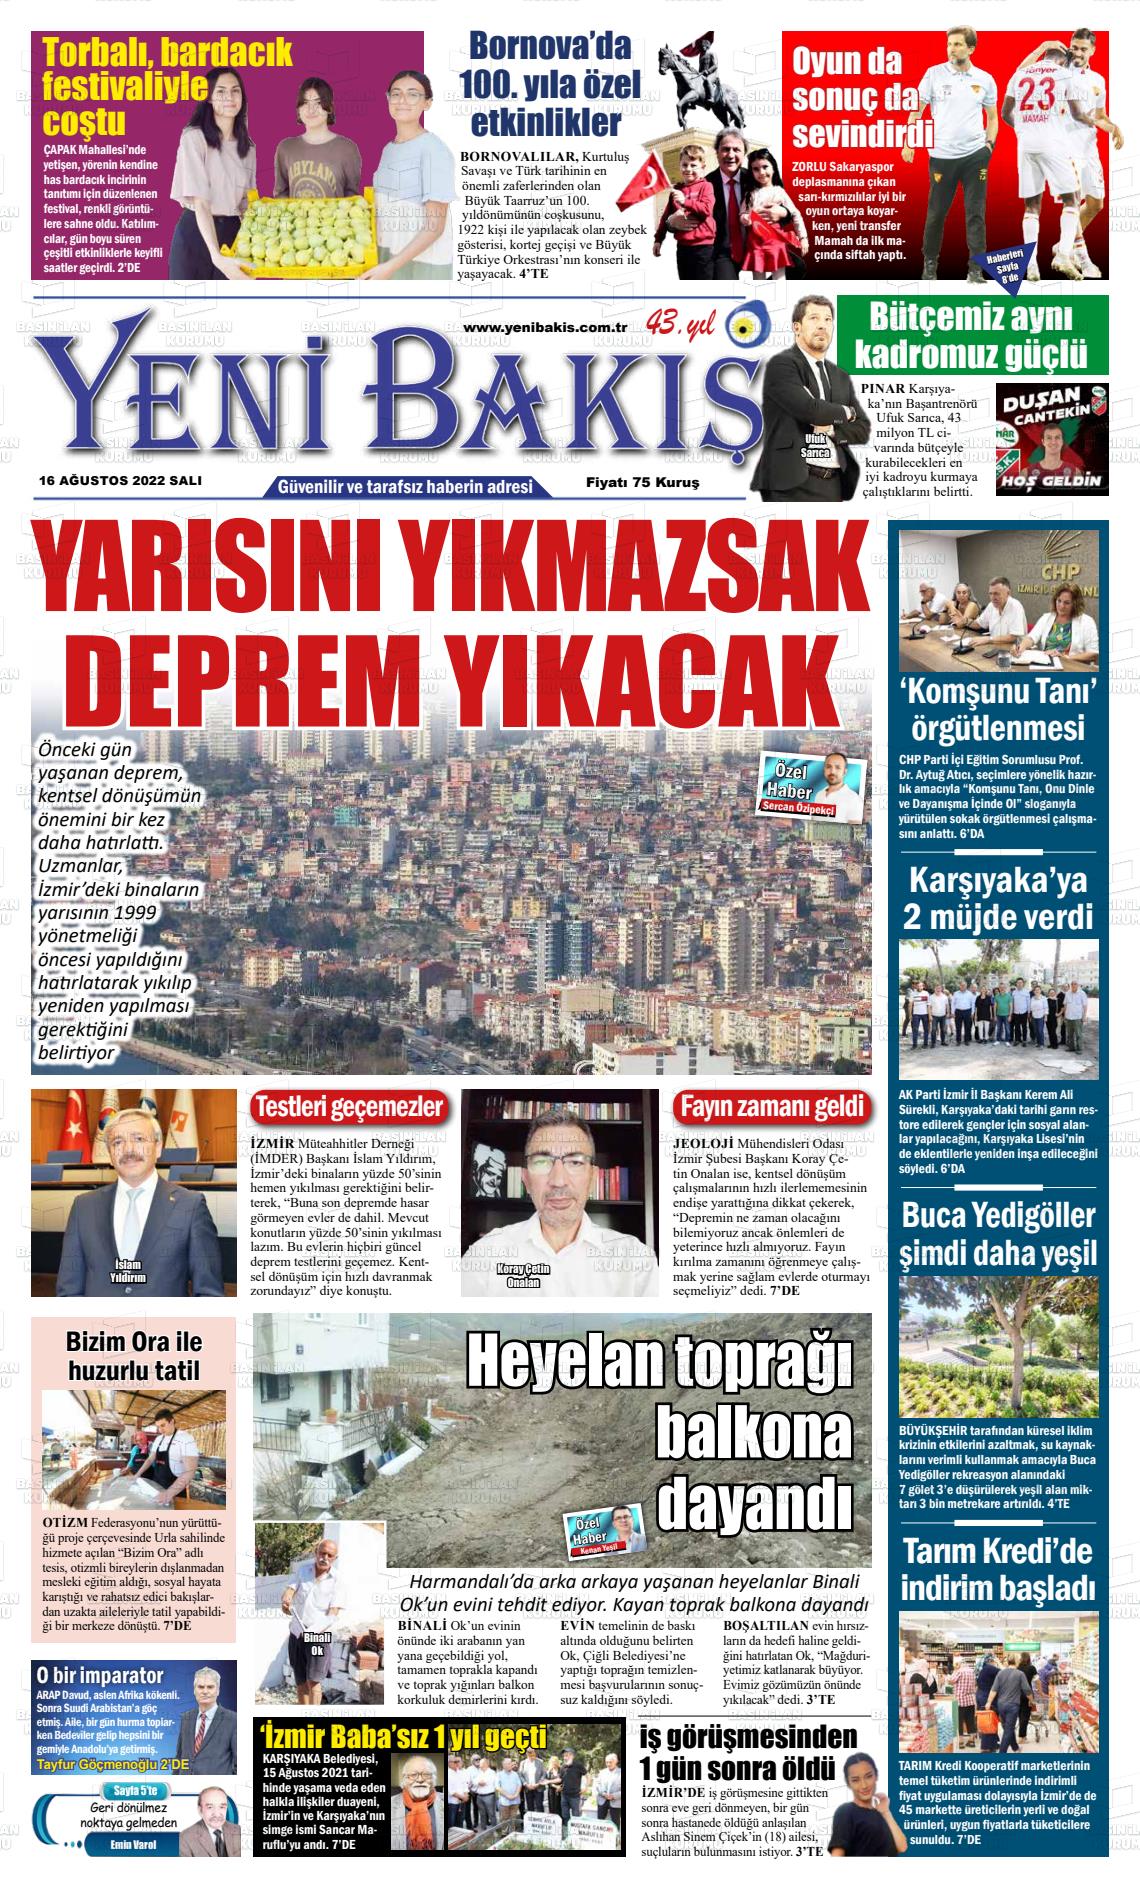 16 Ağustos 2022 Yeni Bakış Gazete Manşeti